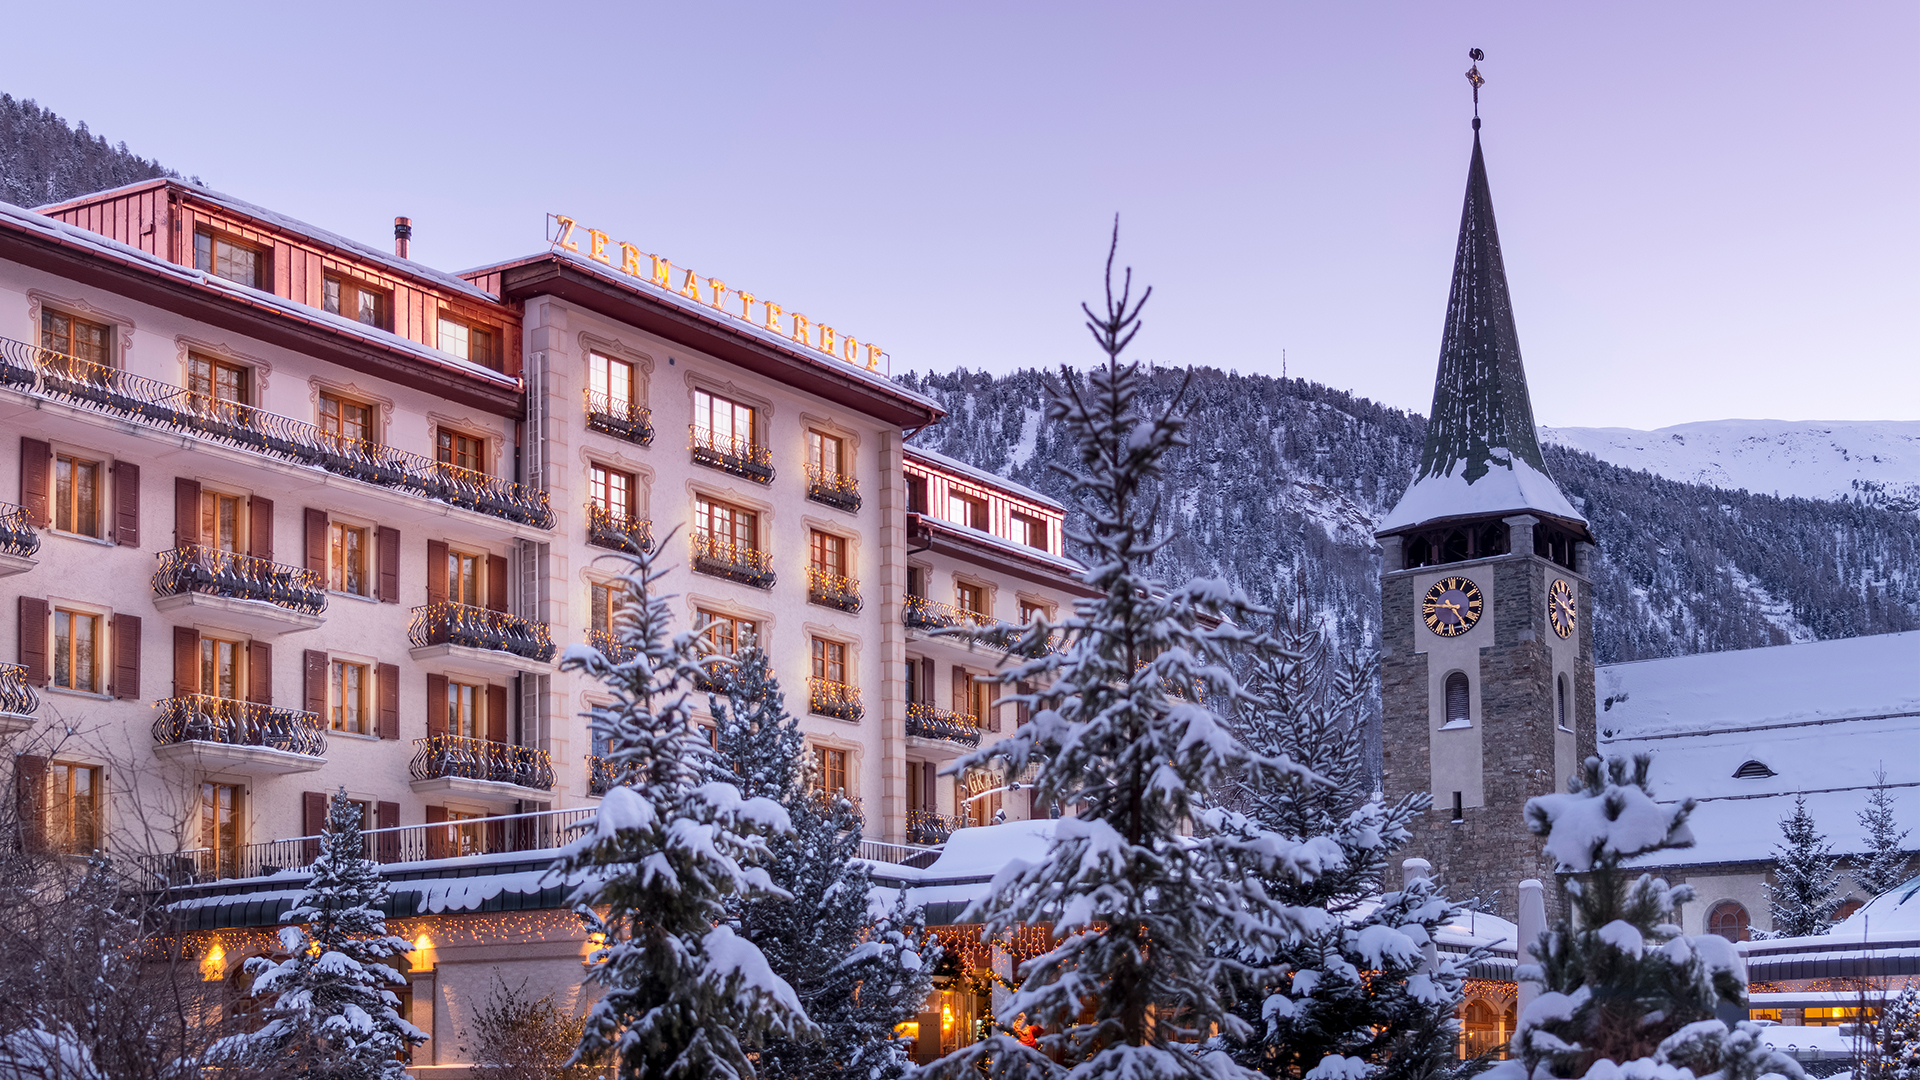 Grand Hotel Zermatterhof Switzerland